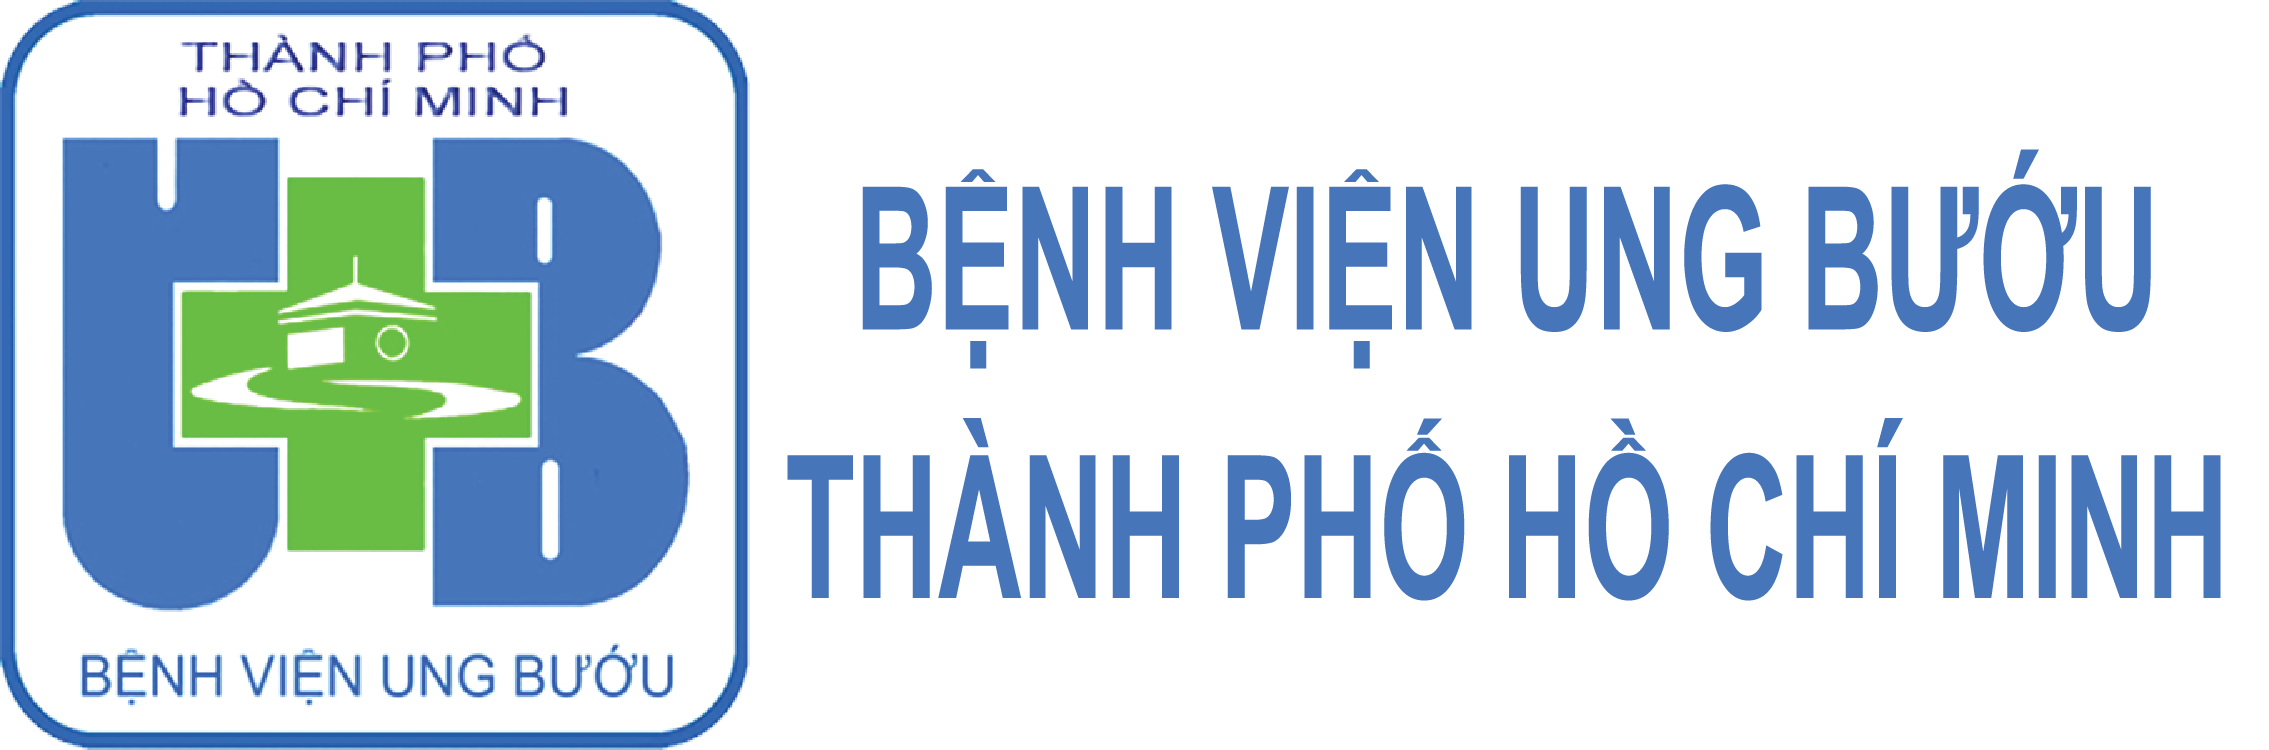 Bệnh viện Ung bướu TP Hồ Chí Minh giao ban trực tuyến bằng Hội nghị truyền hình TrueConf.